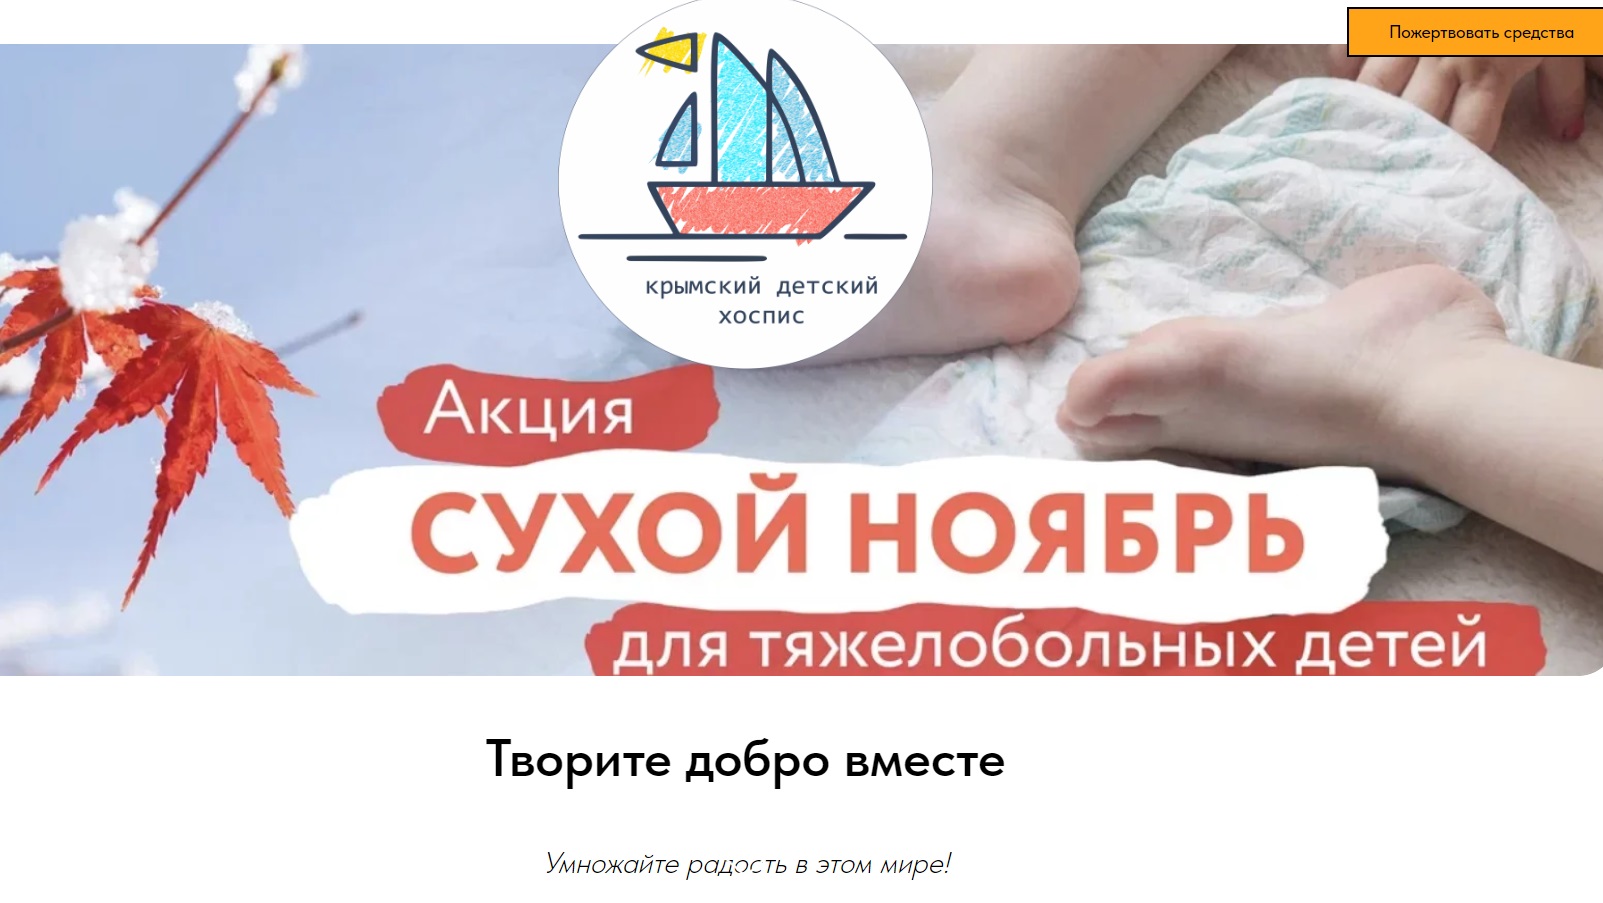 Крымский детский хоспис запустил акцию «Сухой ноябрь»